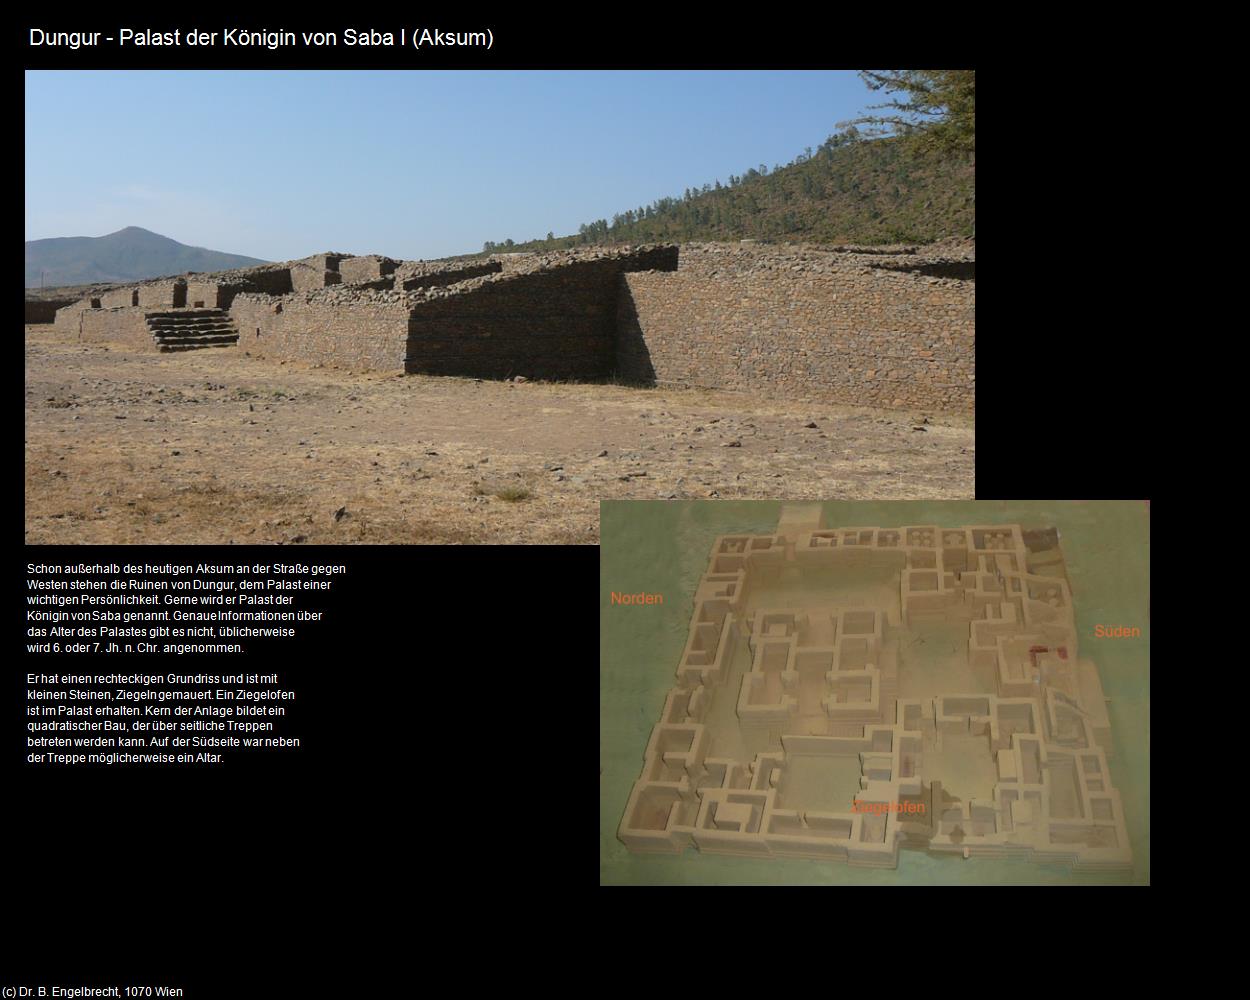 Dungur - Palast der Königin von Saba I  (Aksum) in Äthiopien